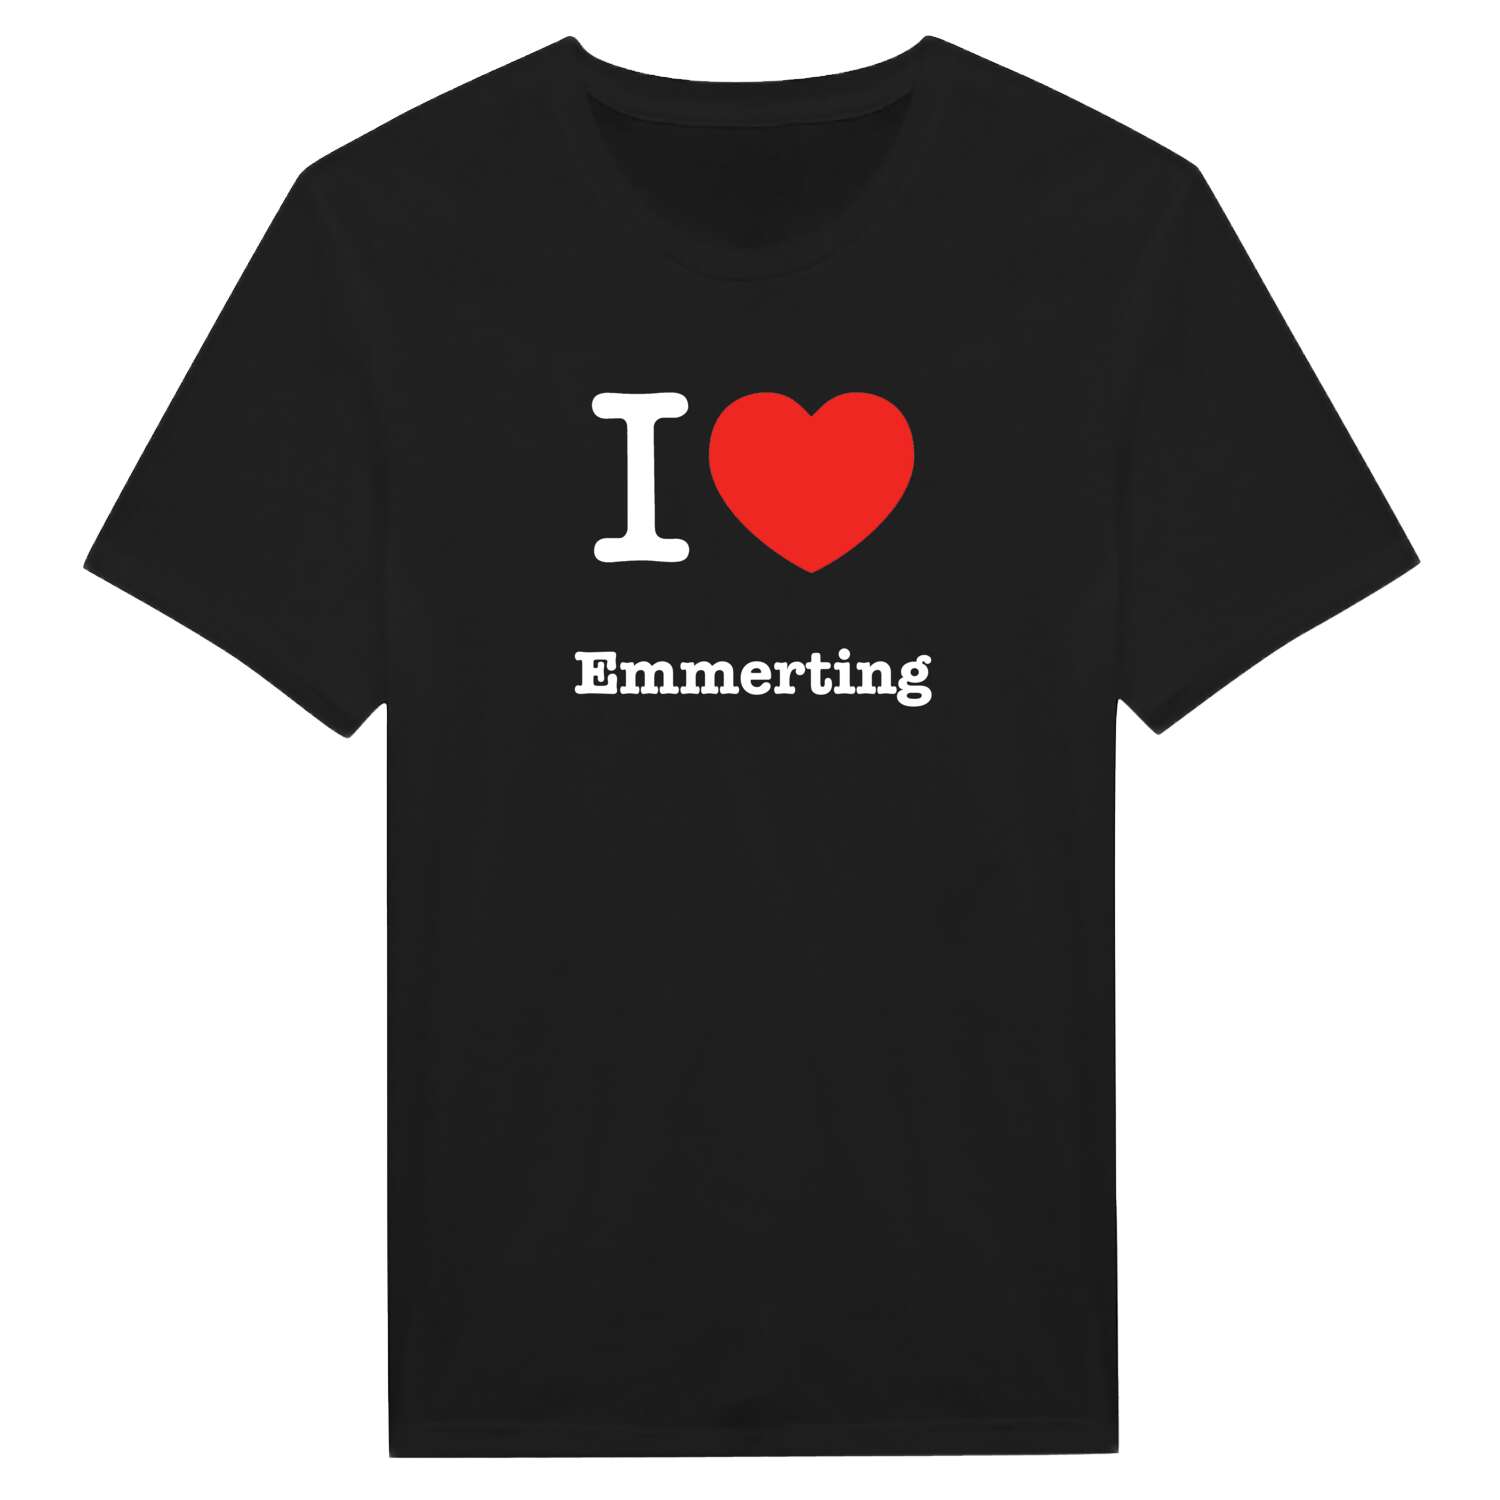 Emmerting T-Shirt »I love«